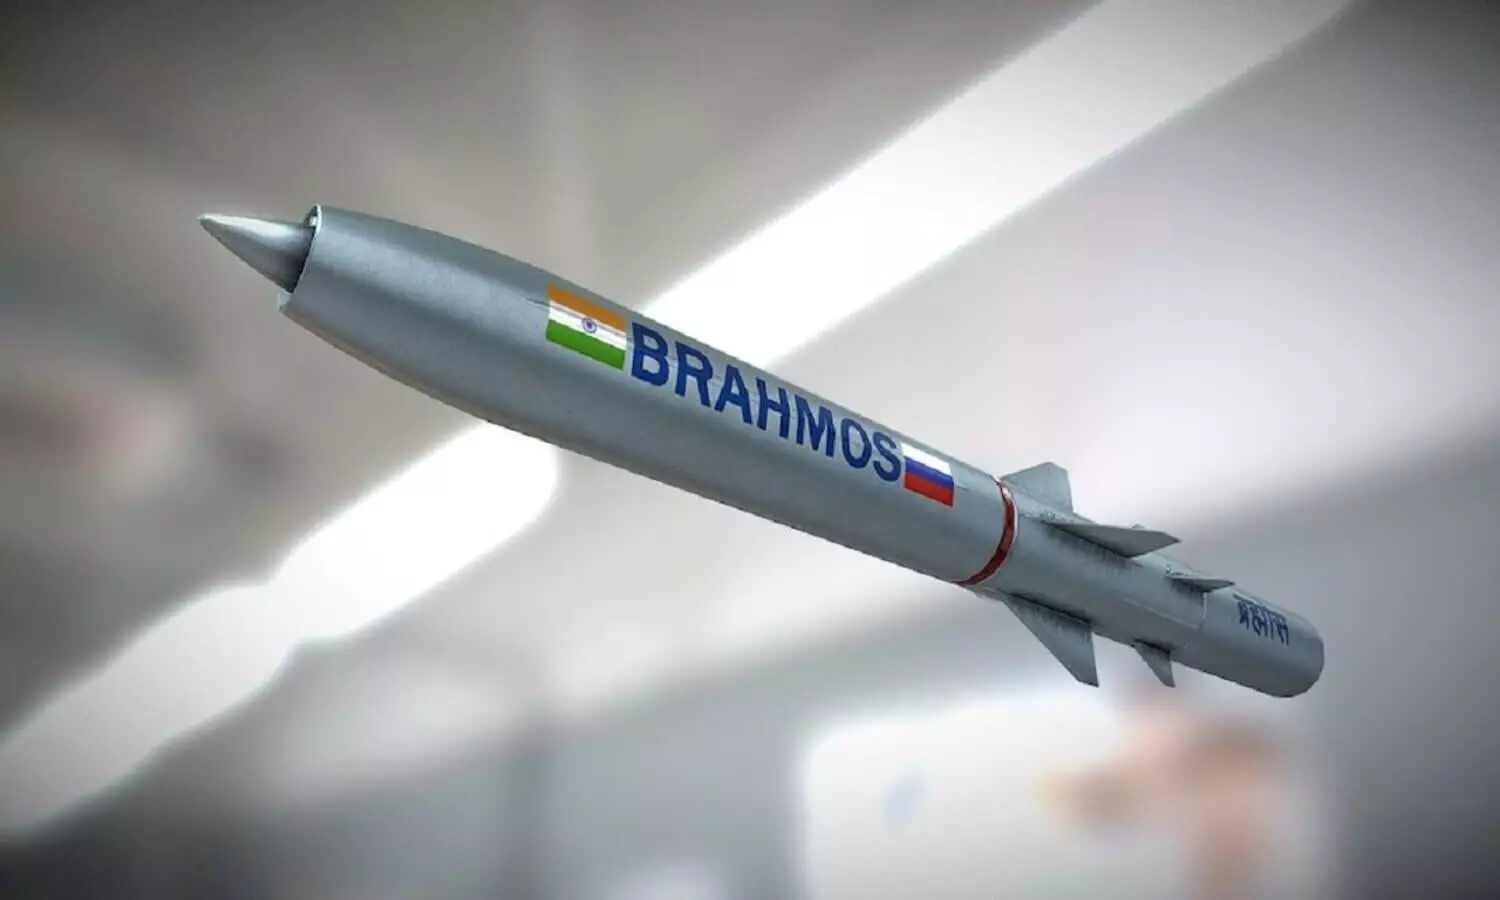 Brahmos Missile Misfire